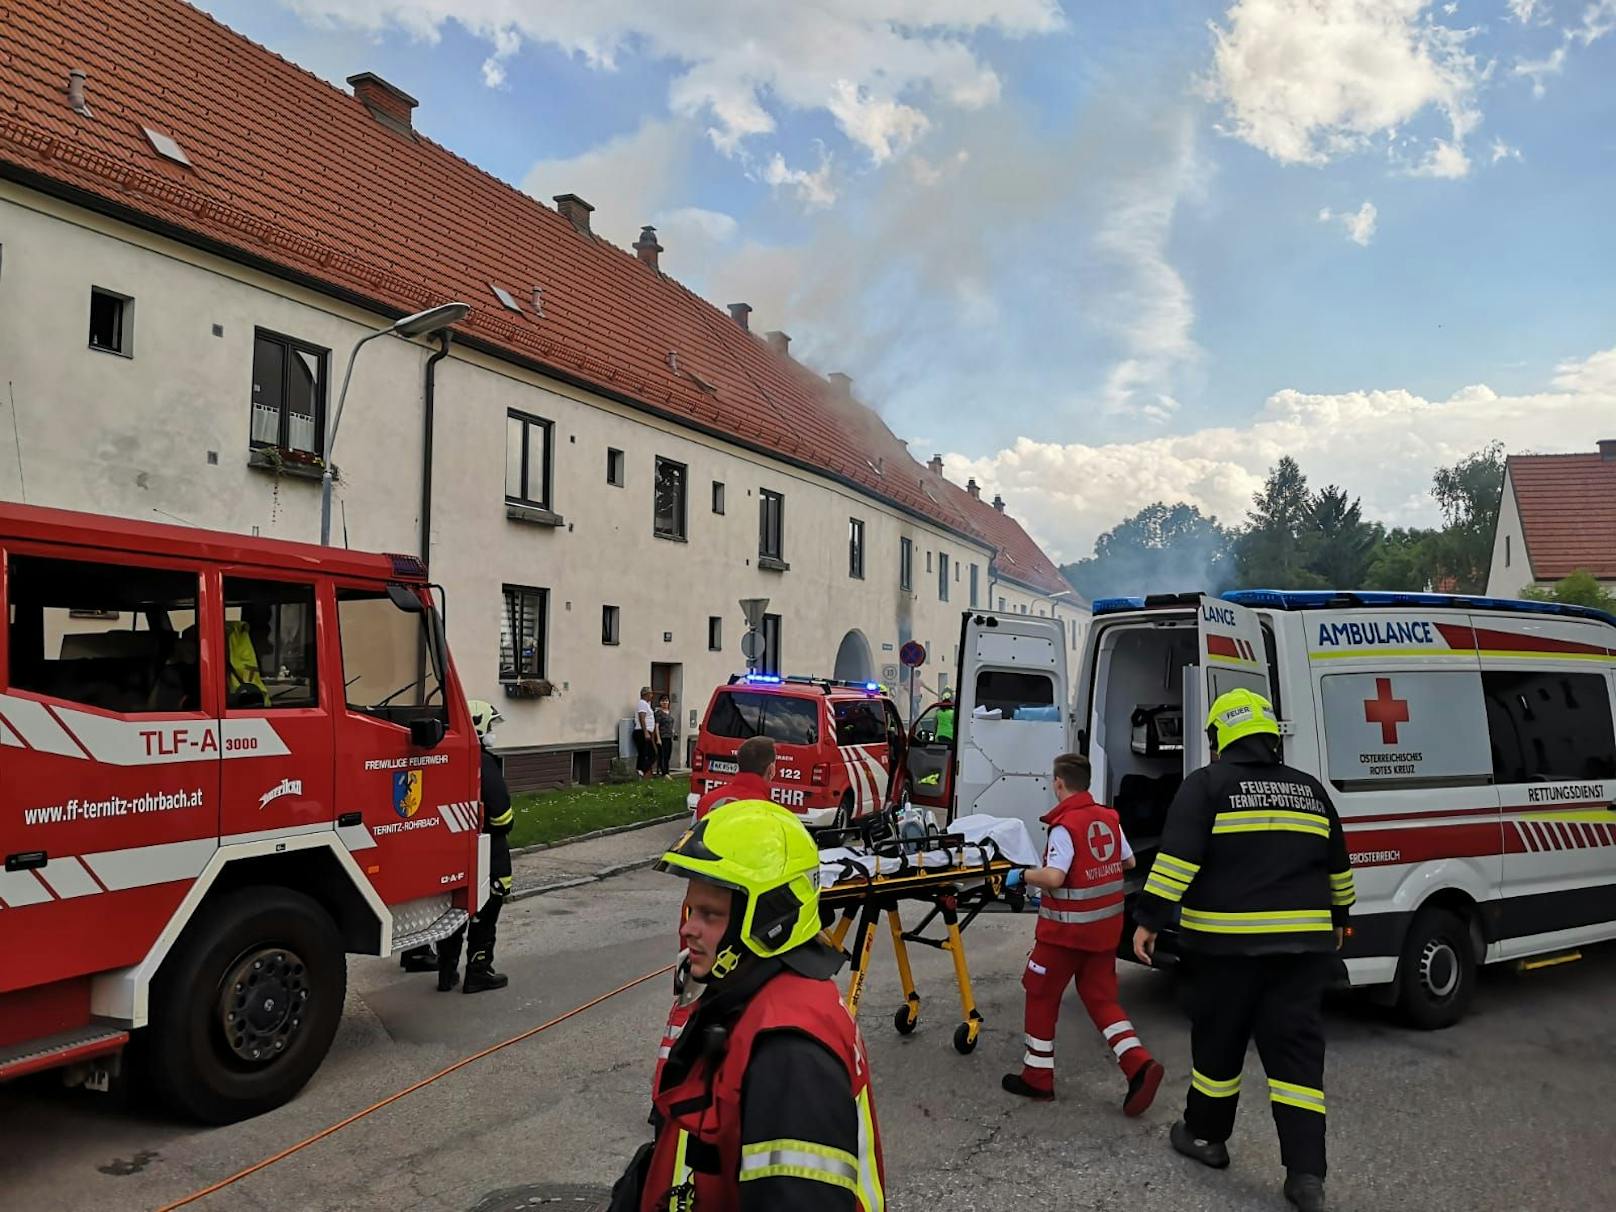 Wohnhausbrand in Ternitz: Die Einsatzkräfte vor Ort